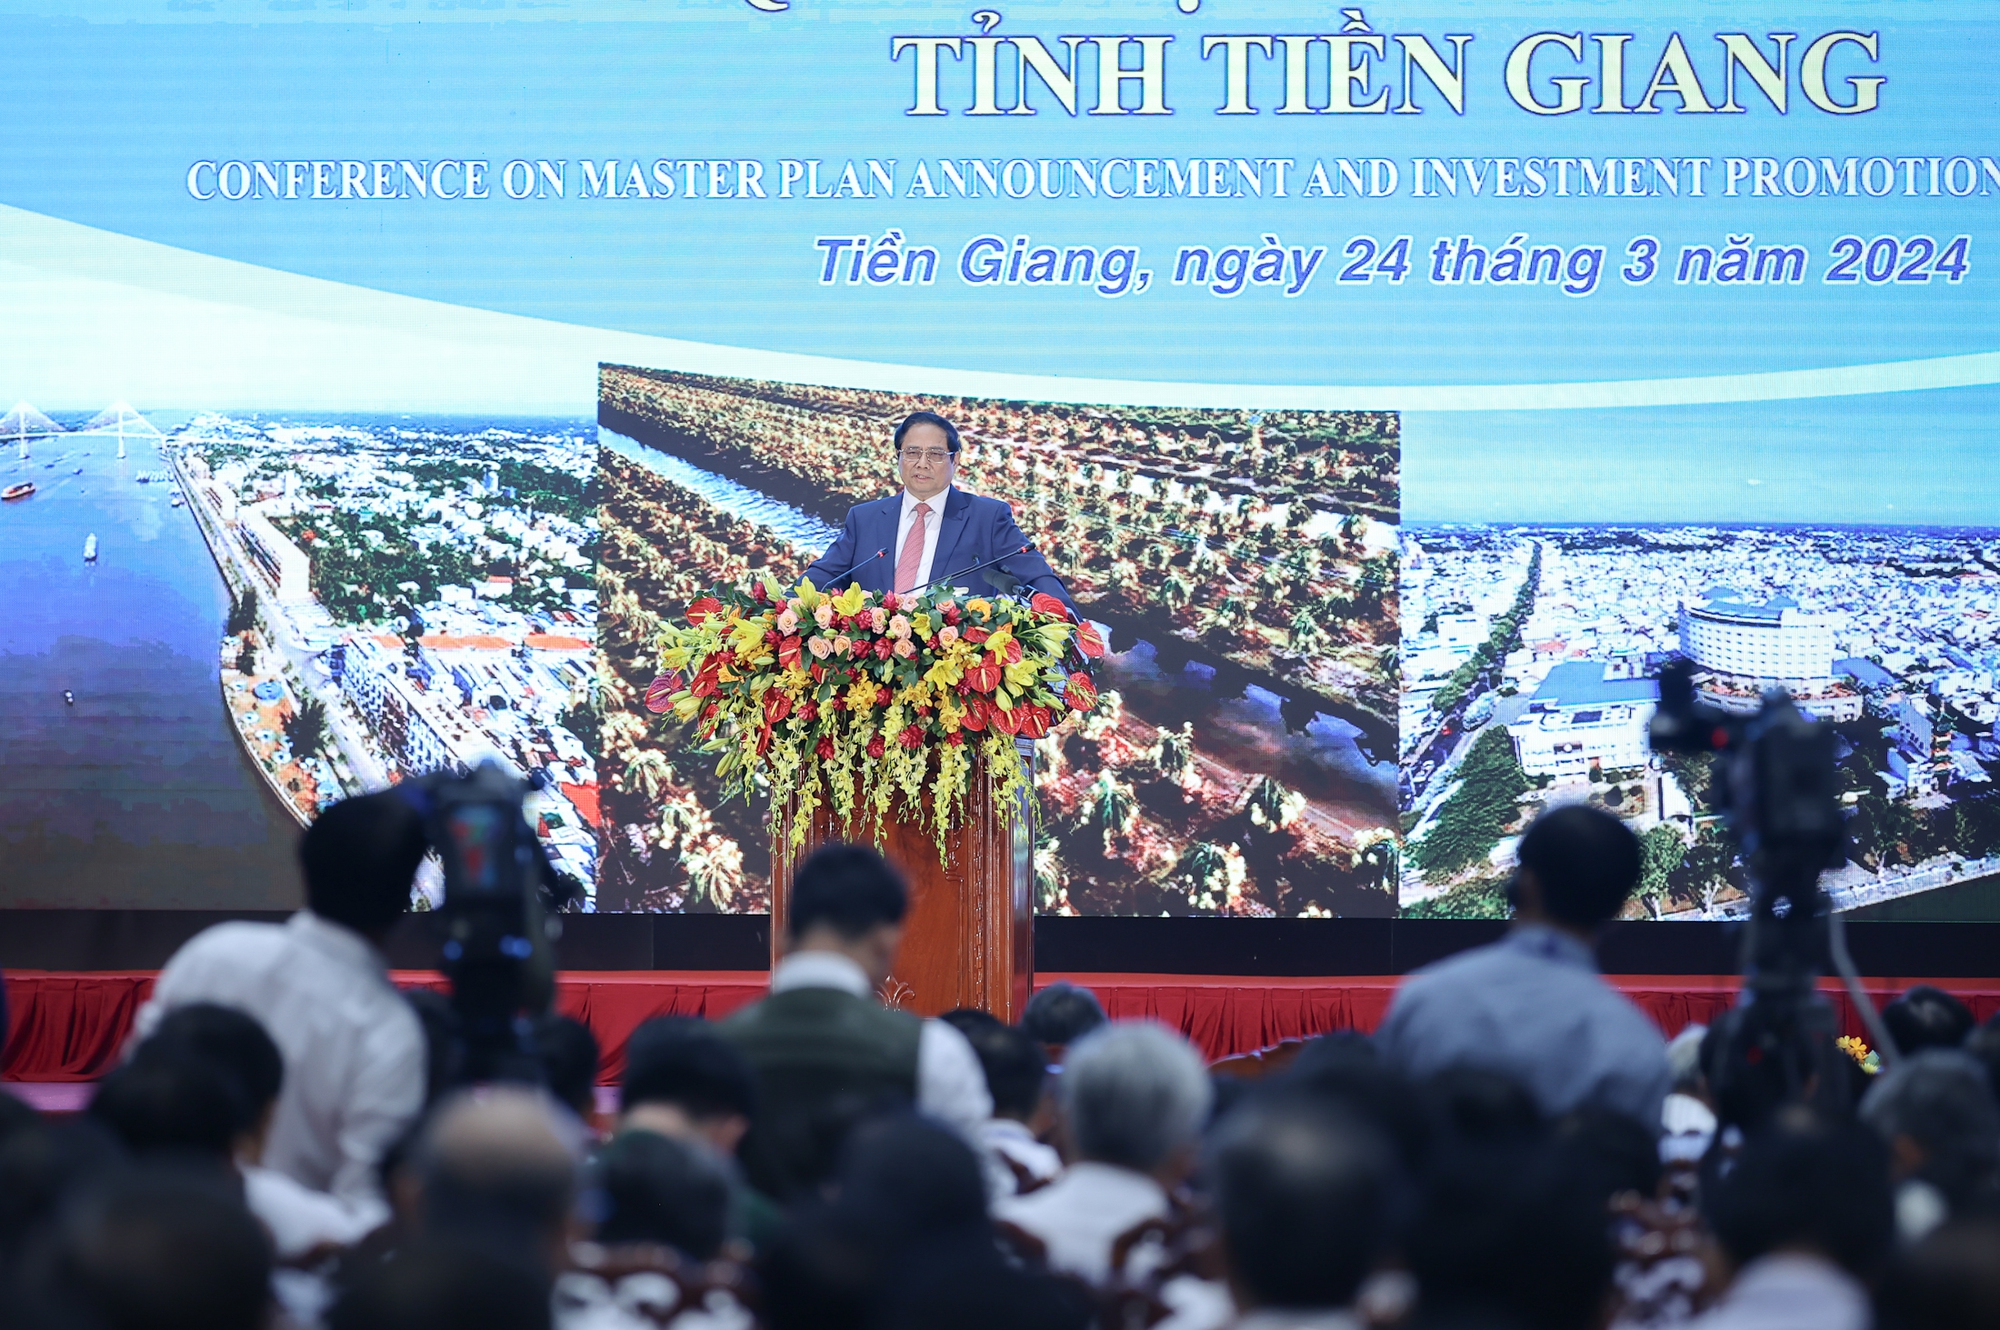 Theo Thủ tướng, nhiệm vụ trọng tâm, trung tâm trong thực hiện Quy hoạch tỉnh Tiền Giang là huy động và sử dụng hiệu quả mọi nguồn lực hợp pháp để thúc đẩy các động lực tăng trưởng truyền thống và đột phá vào các động lực tăng trưởng mới - Ảnh: VGP/Nhật Bắc